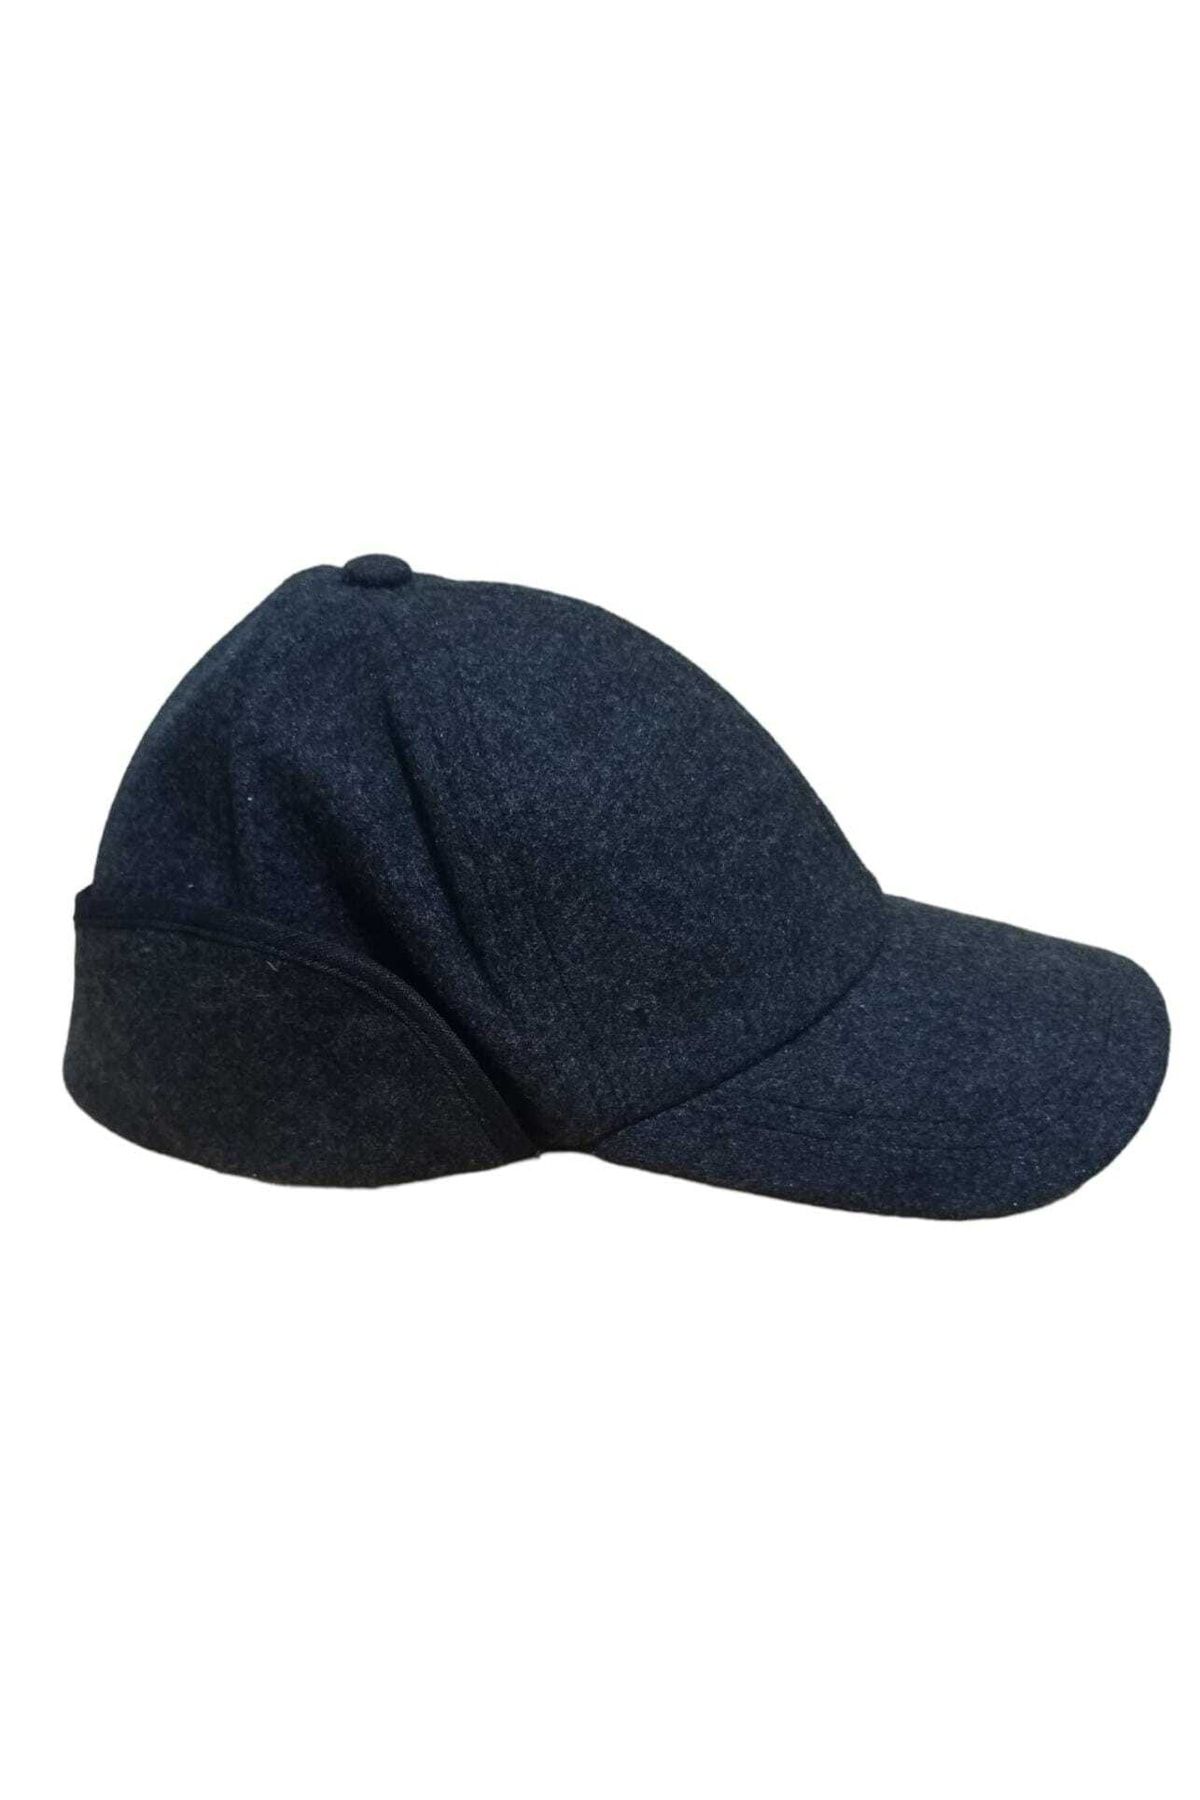 salarticaret Kışlık Kulaklıklı Şapka Ense Ve Kulak Kapatmalı